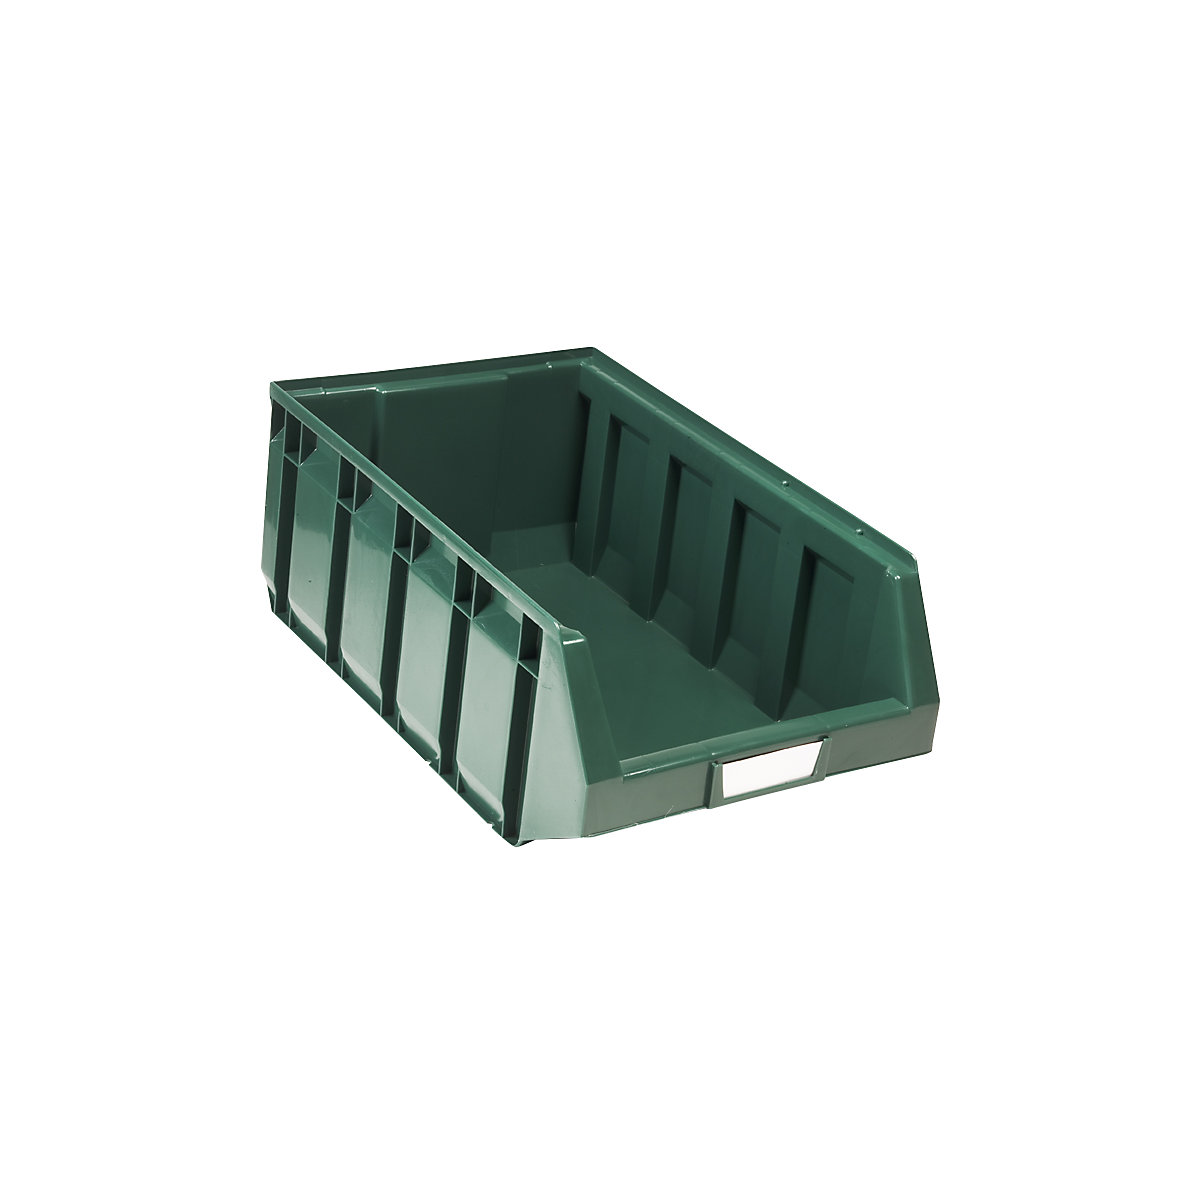 Otvorena skladišna kutija od polietilena, DxŠxV 485 x 298 x 189 mm, u zelenoj boji, pak. 12 kom.-9